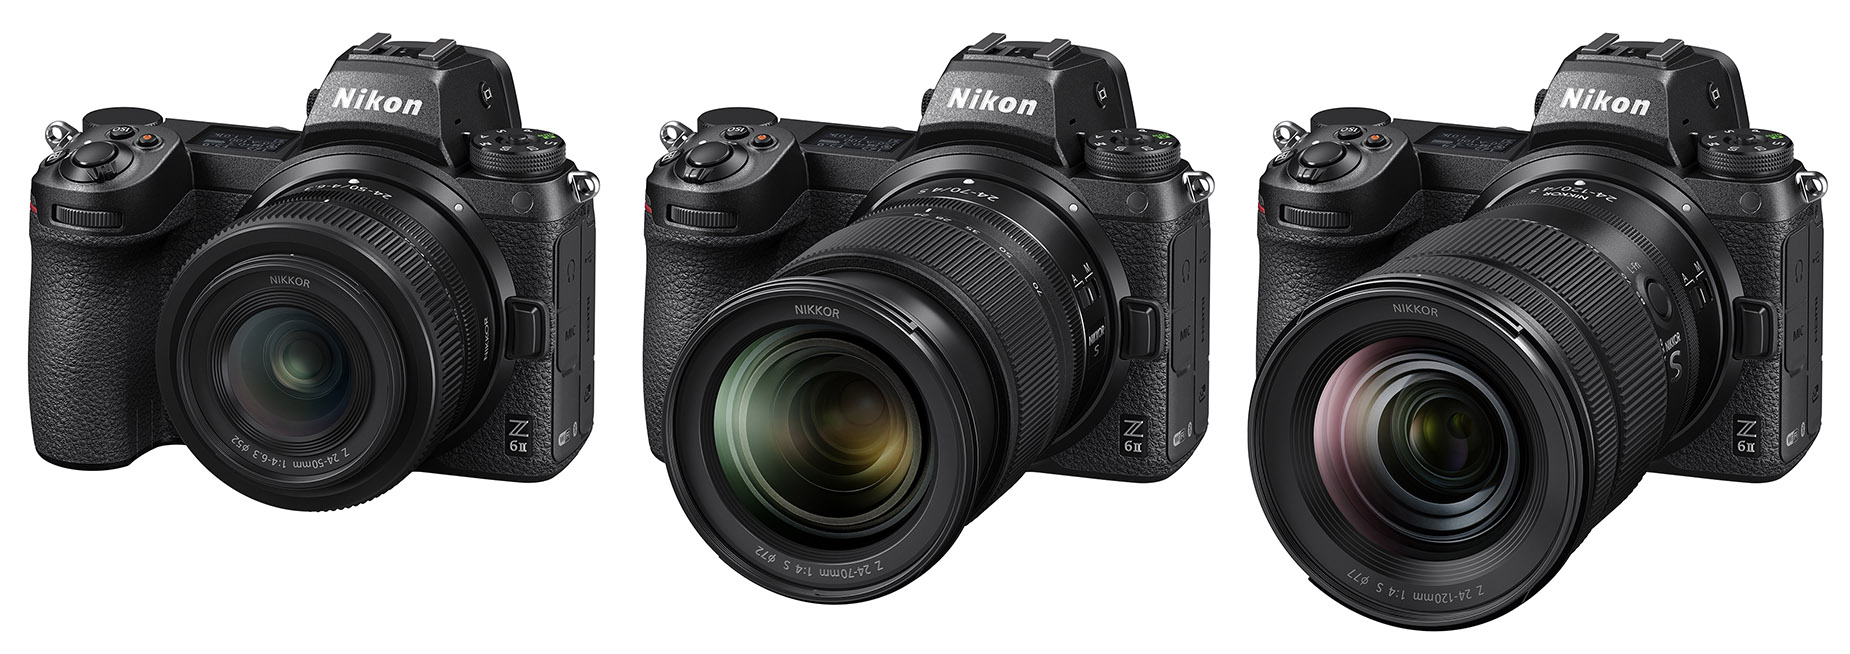 24 120mm 4g vr. Nikon 24-120 f4. Nikon 24-120mm f/4s. Nikon Nikkor z 24-120mm f/4 s. Nikon z 24-120 f4.